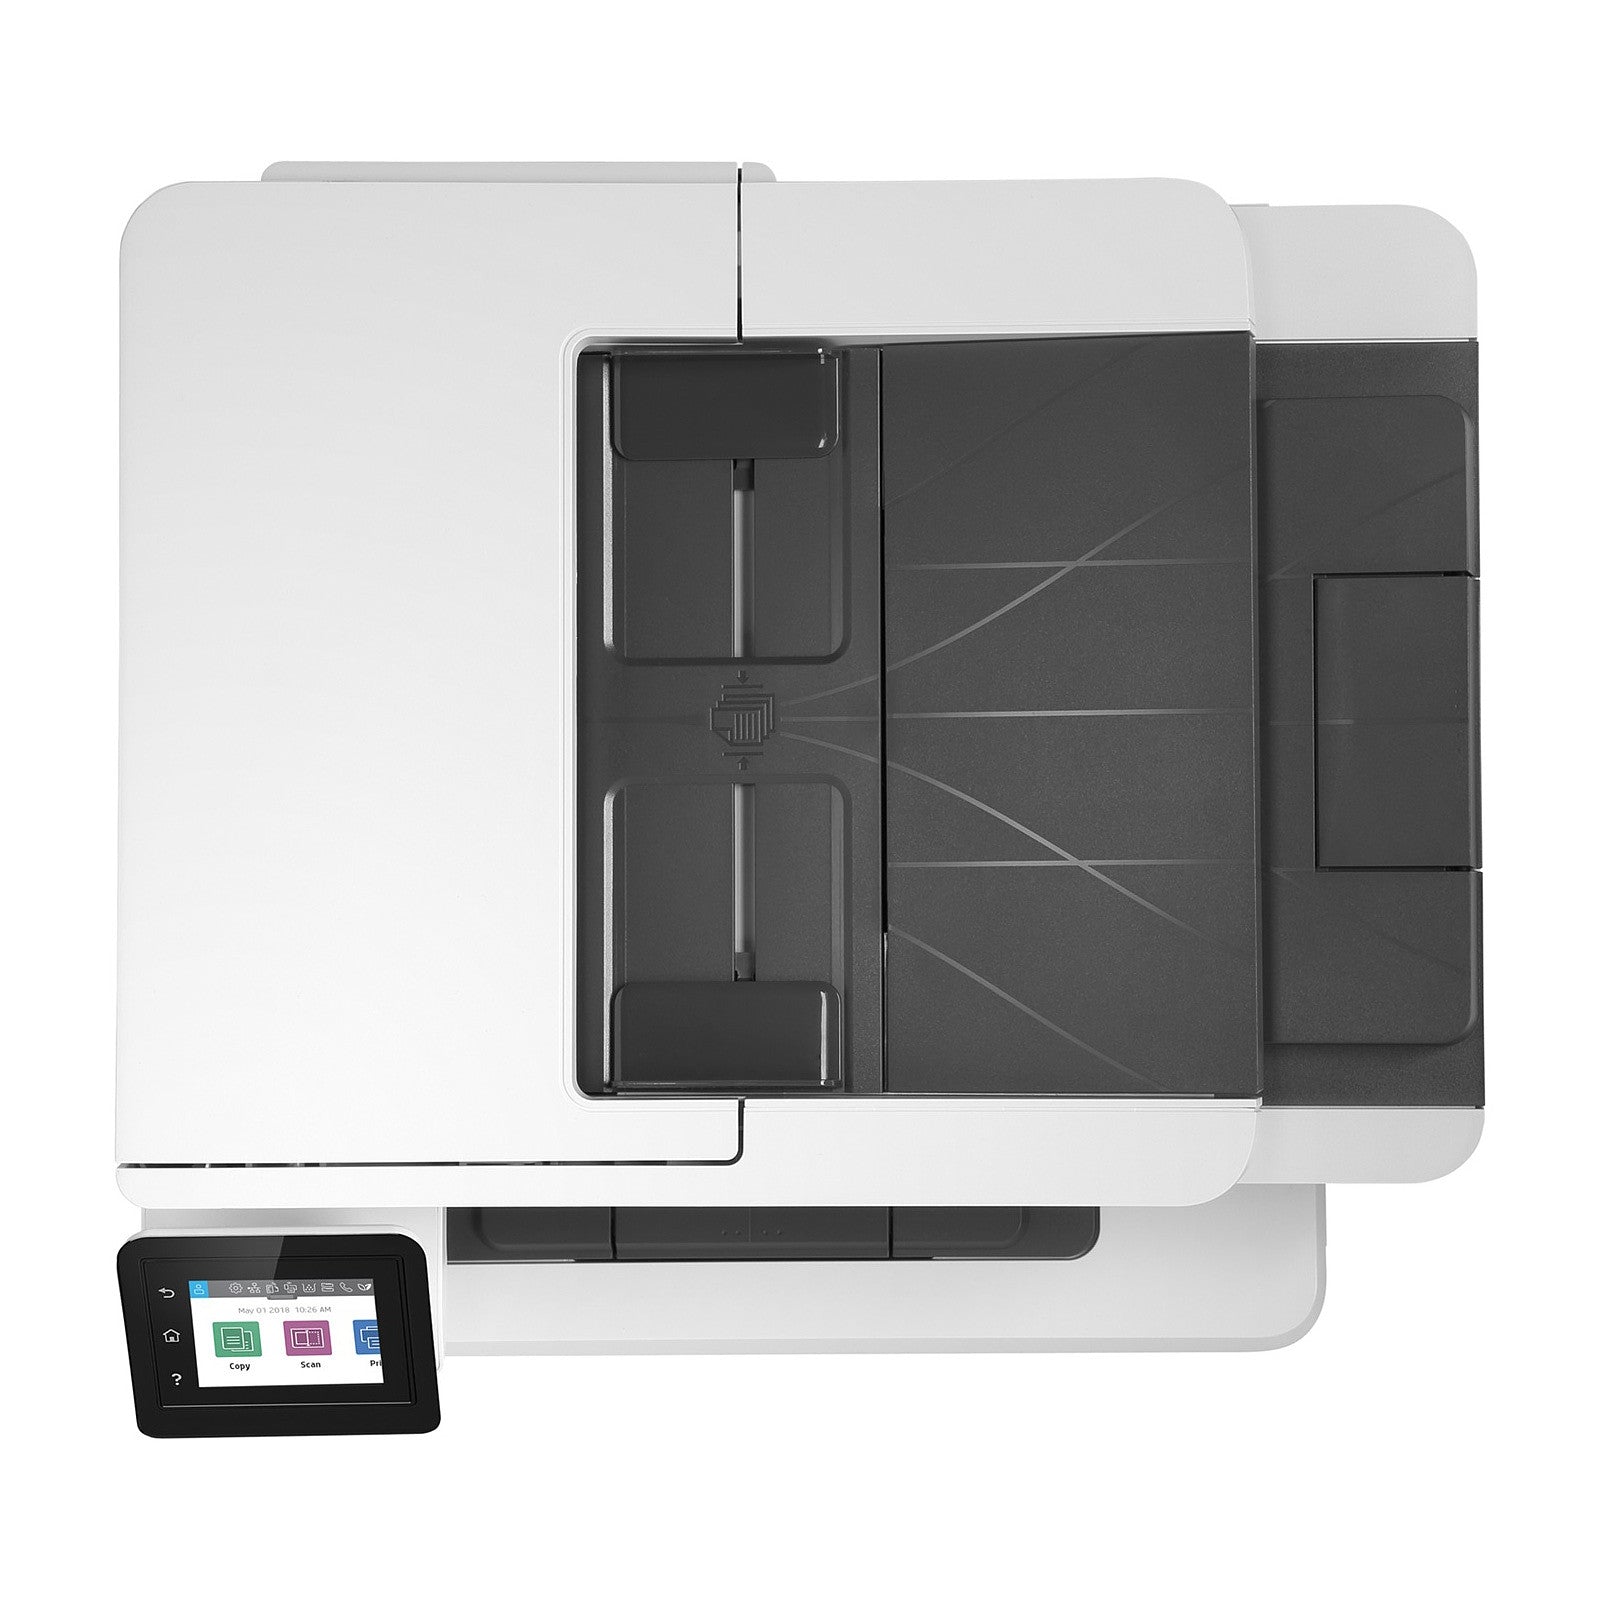 Laserjet 428FDW-HP Black And White Printer